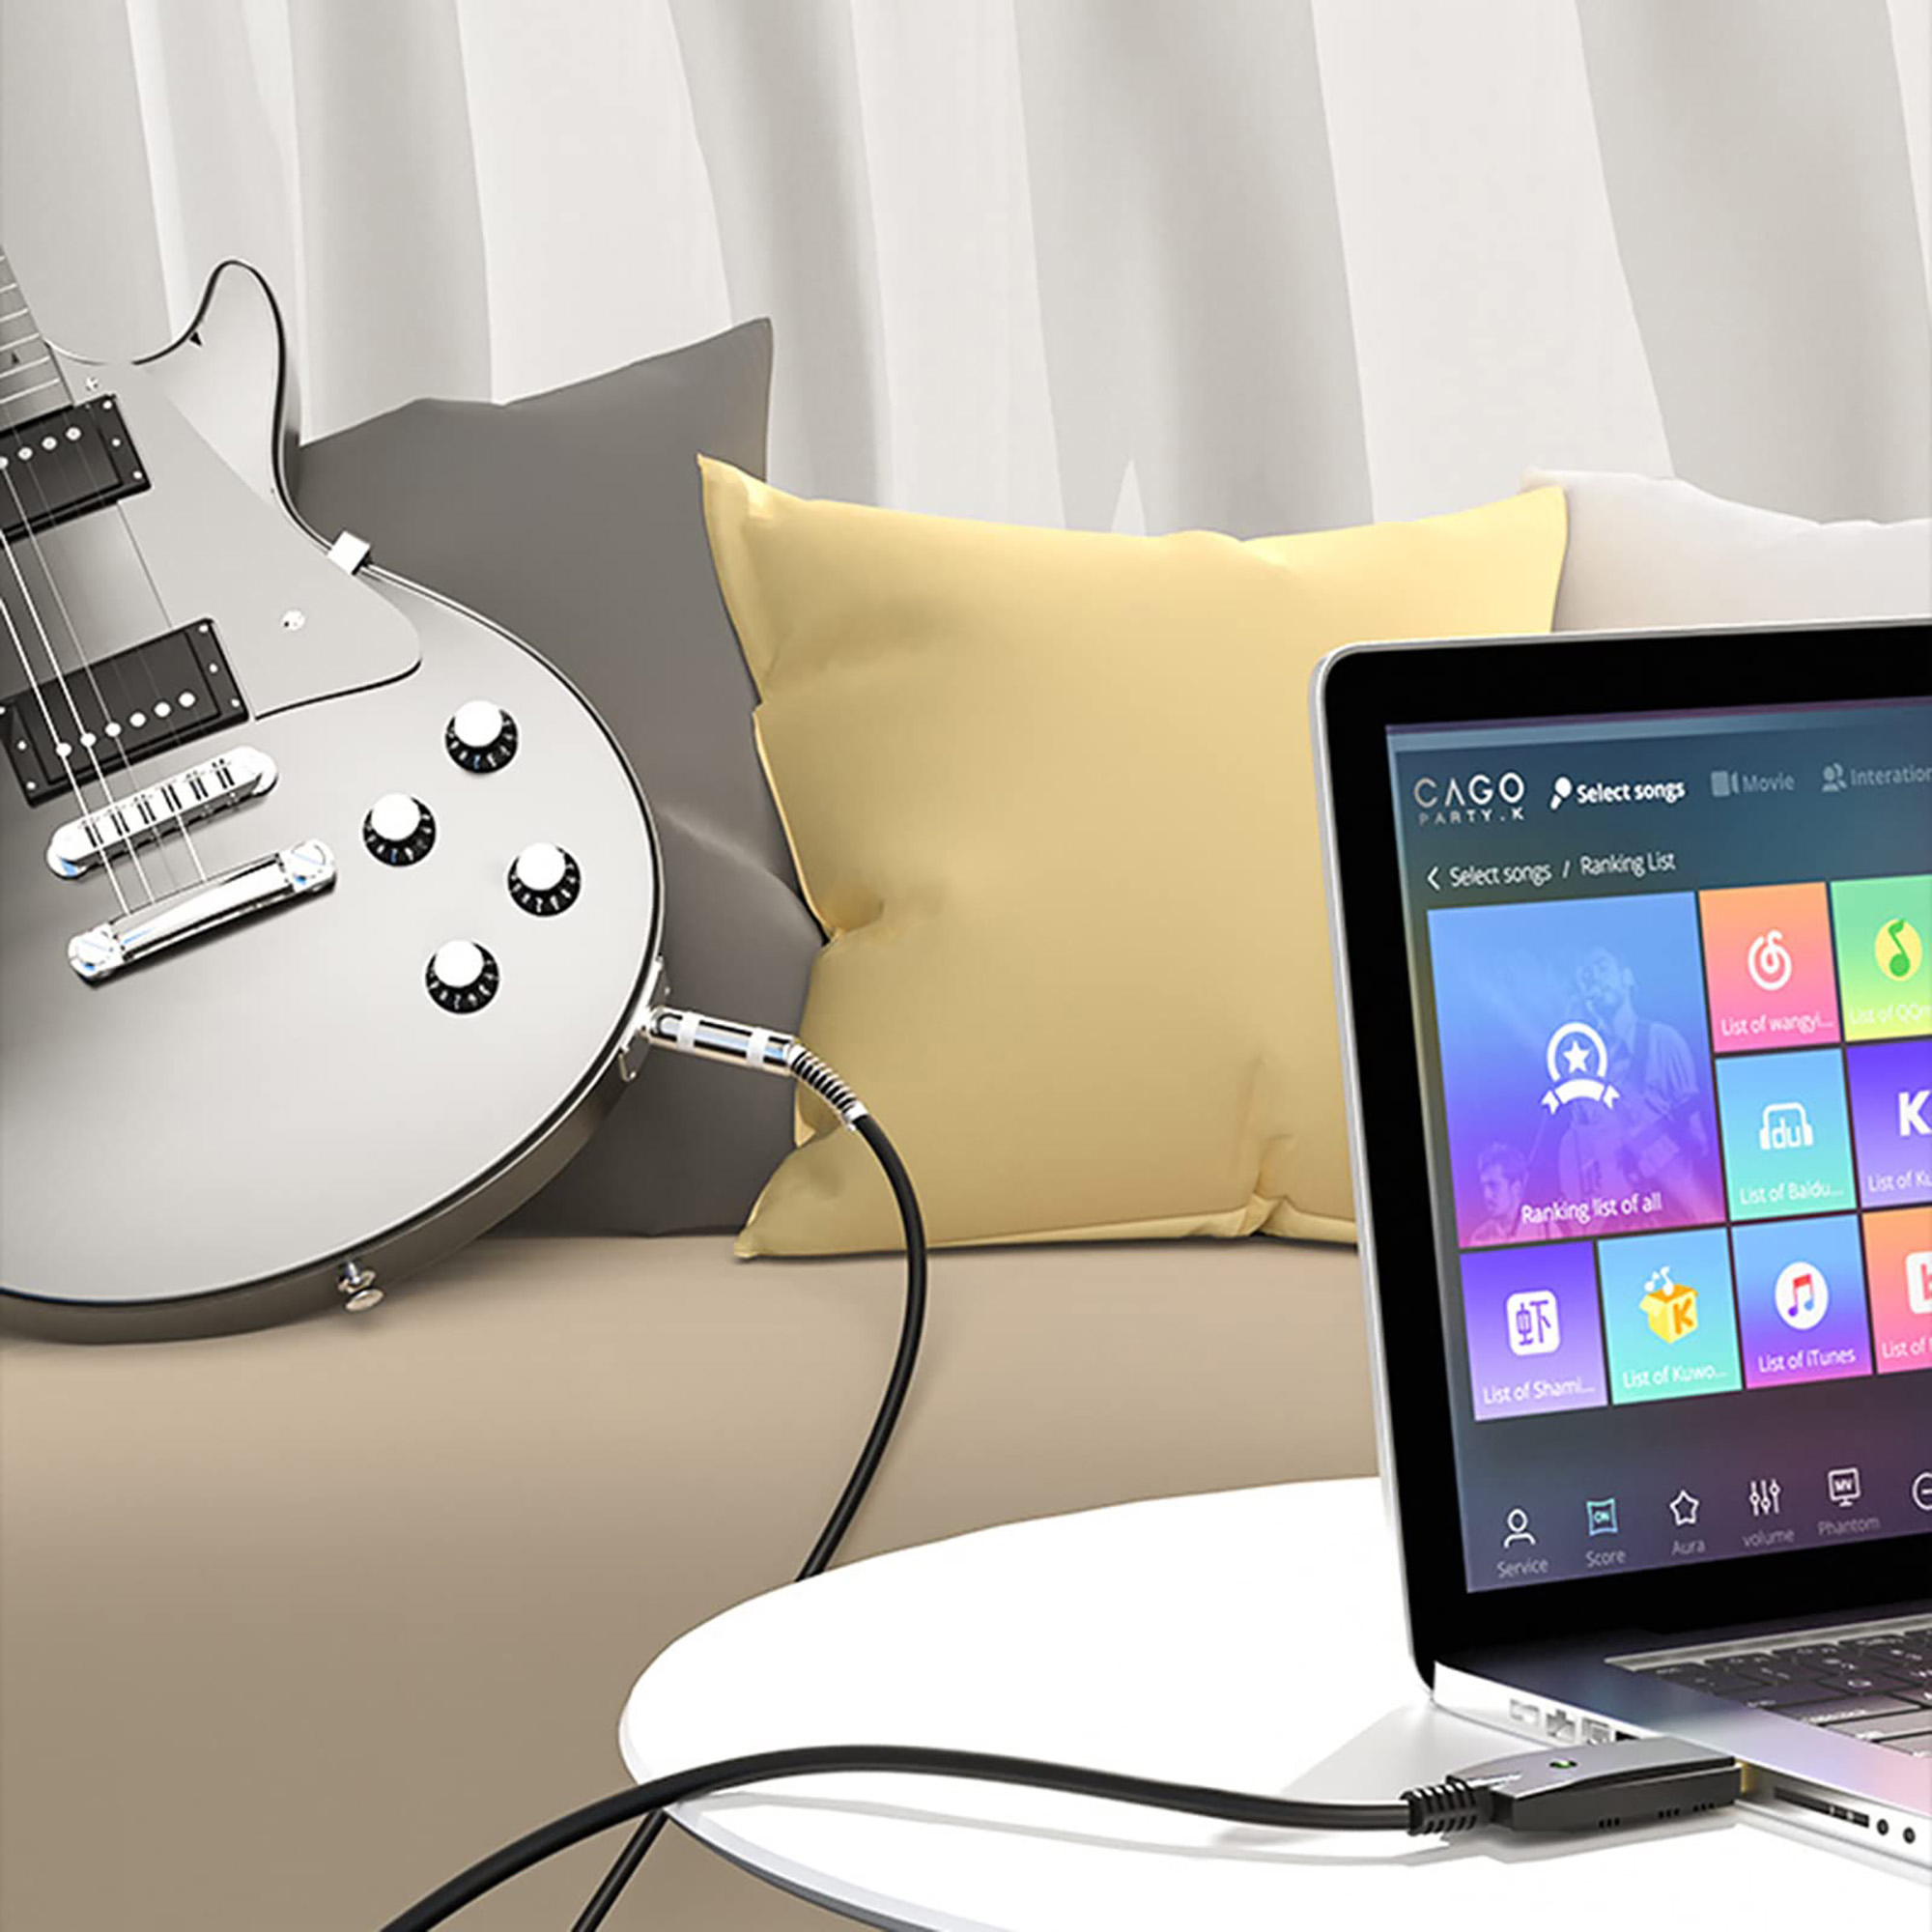 USB635-P1 USB zu Gitarren-Audio-Interface für PC-Audioaufnahme / Konverter-Adapter